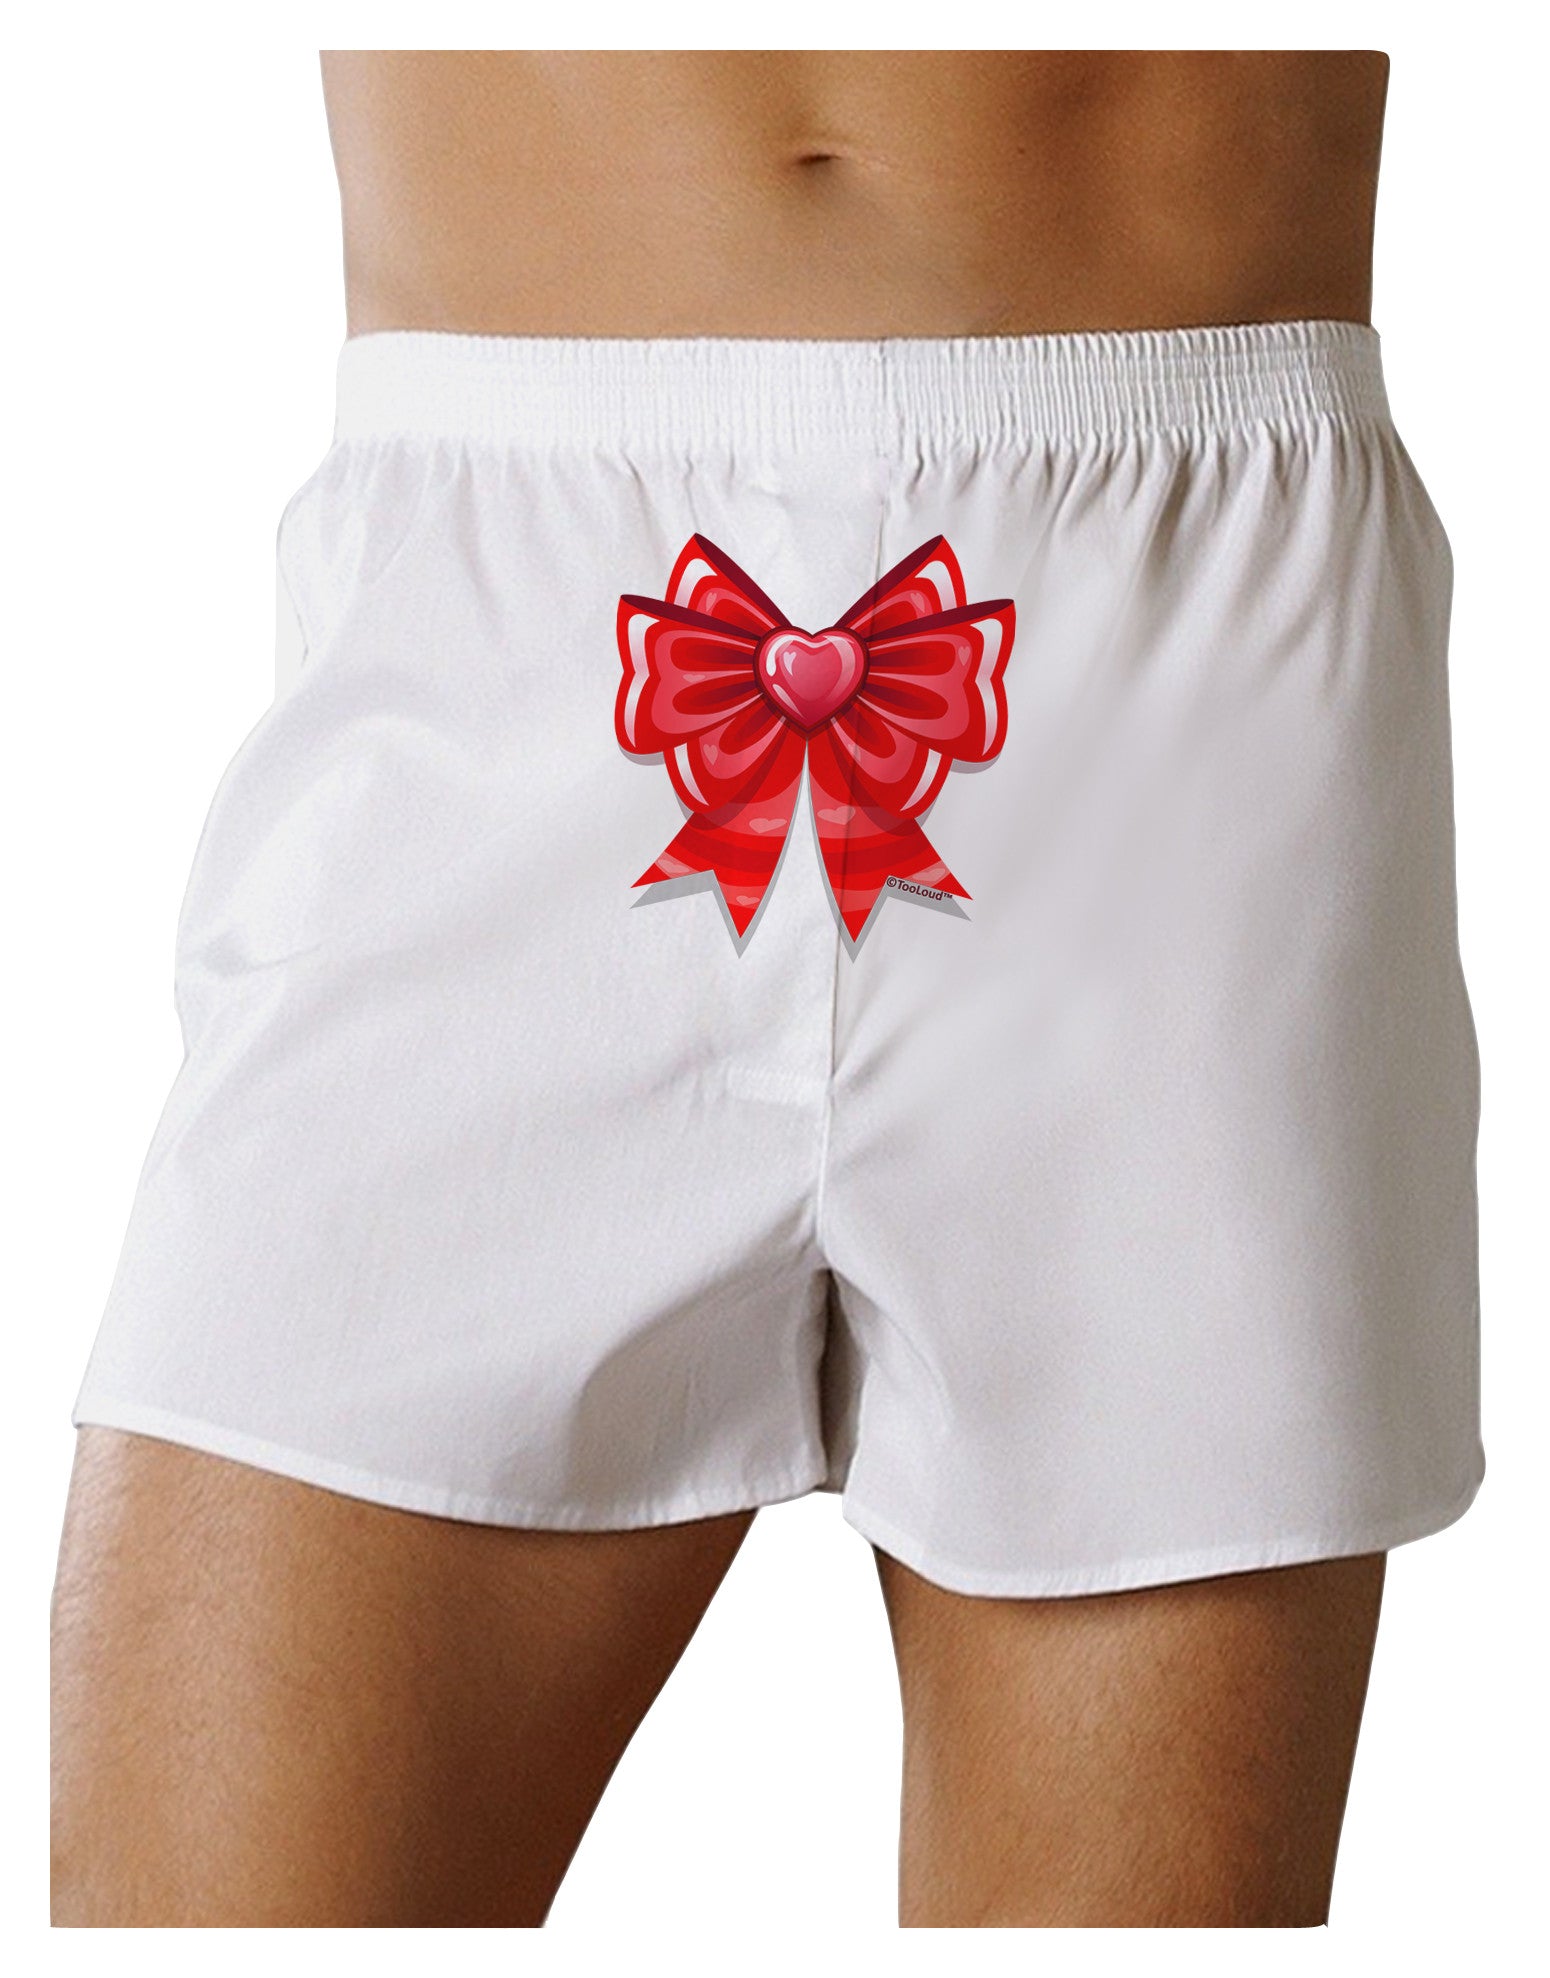 Valentine's Day Heart Bow Mens NDS Wear Briefs Underwear - Davson